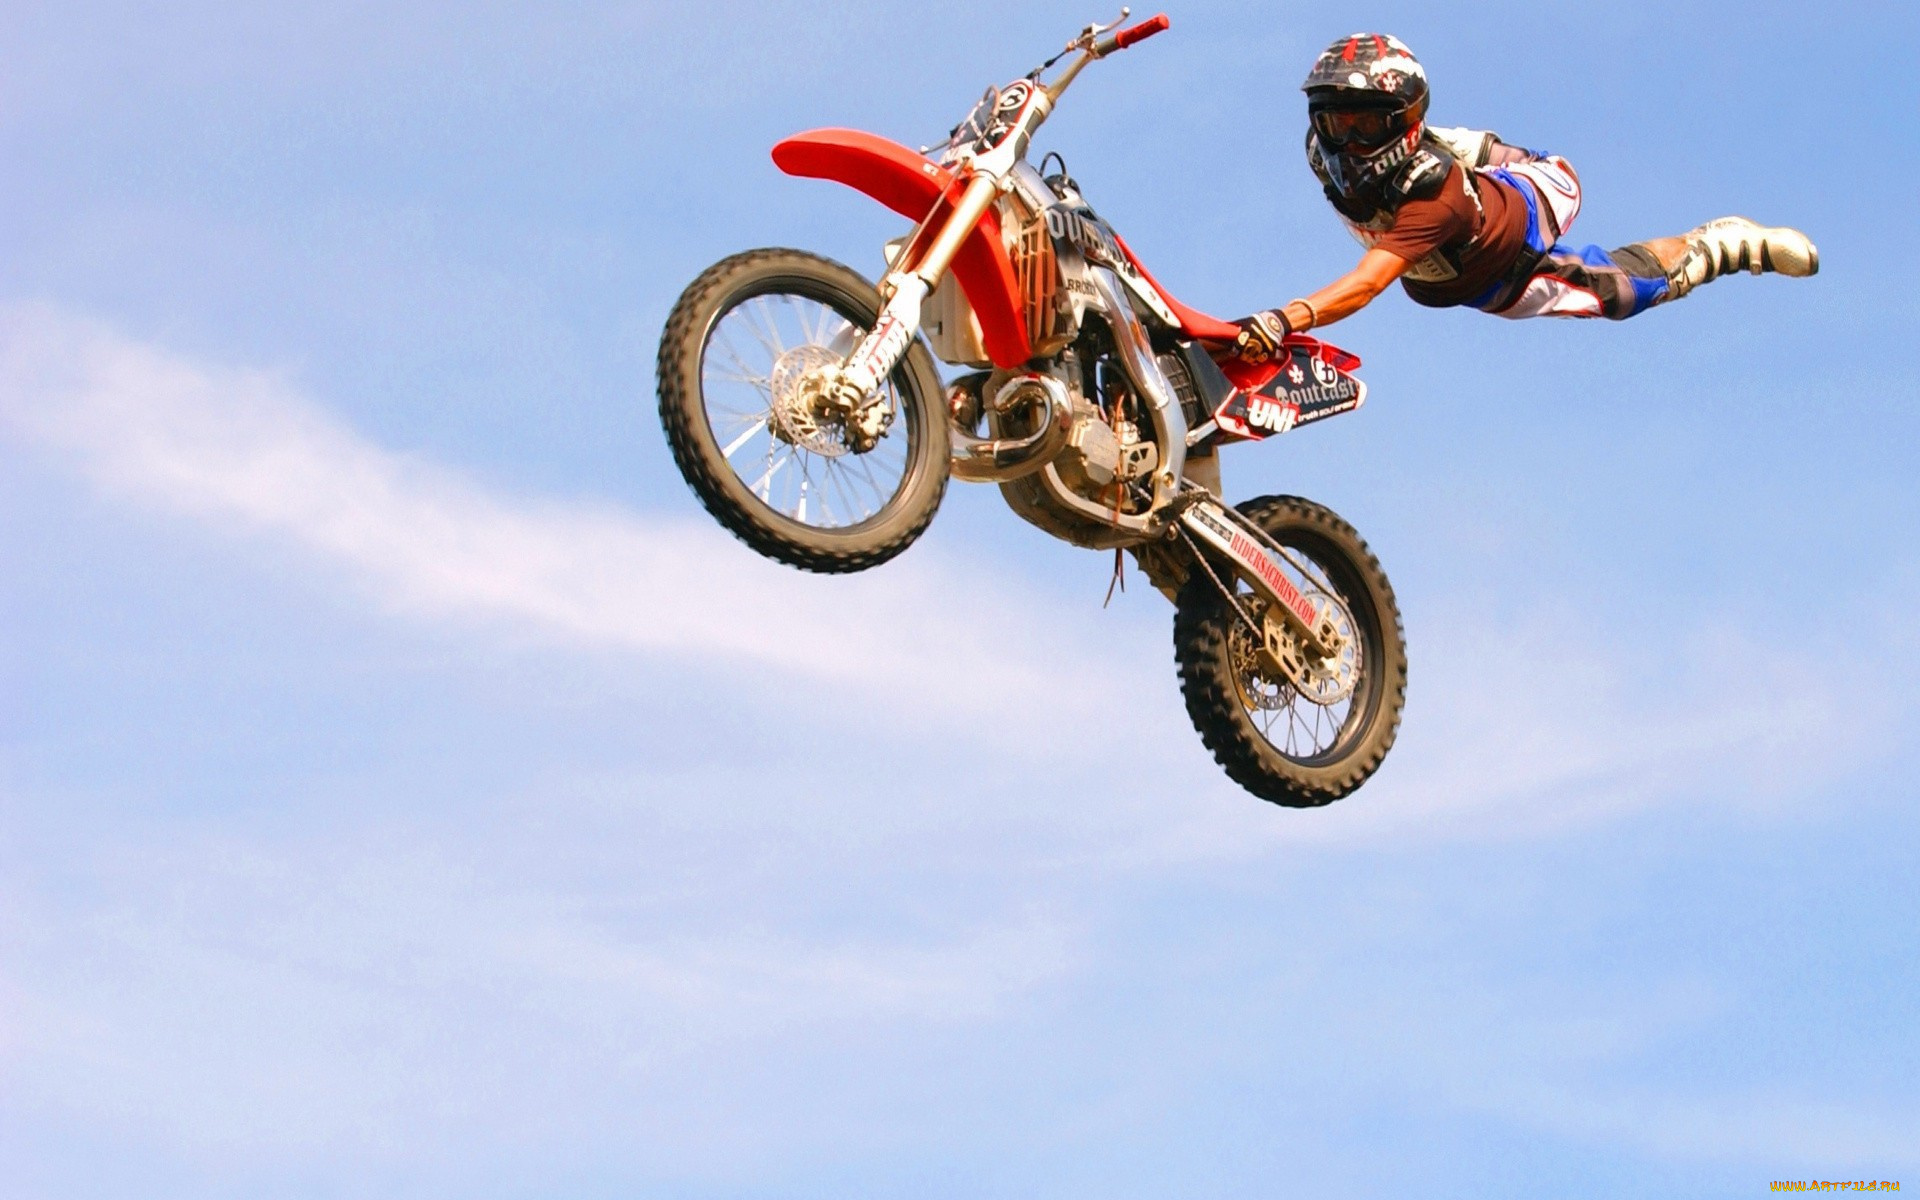 спорт, мотоспорт, мотоцикл, мотоциклист, прыжок, полет, трюк